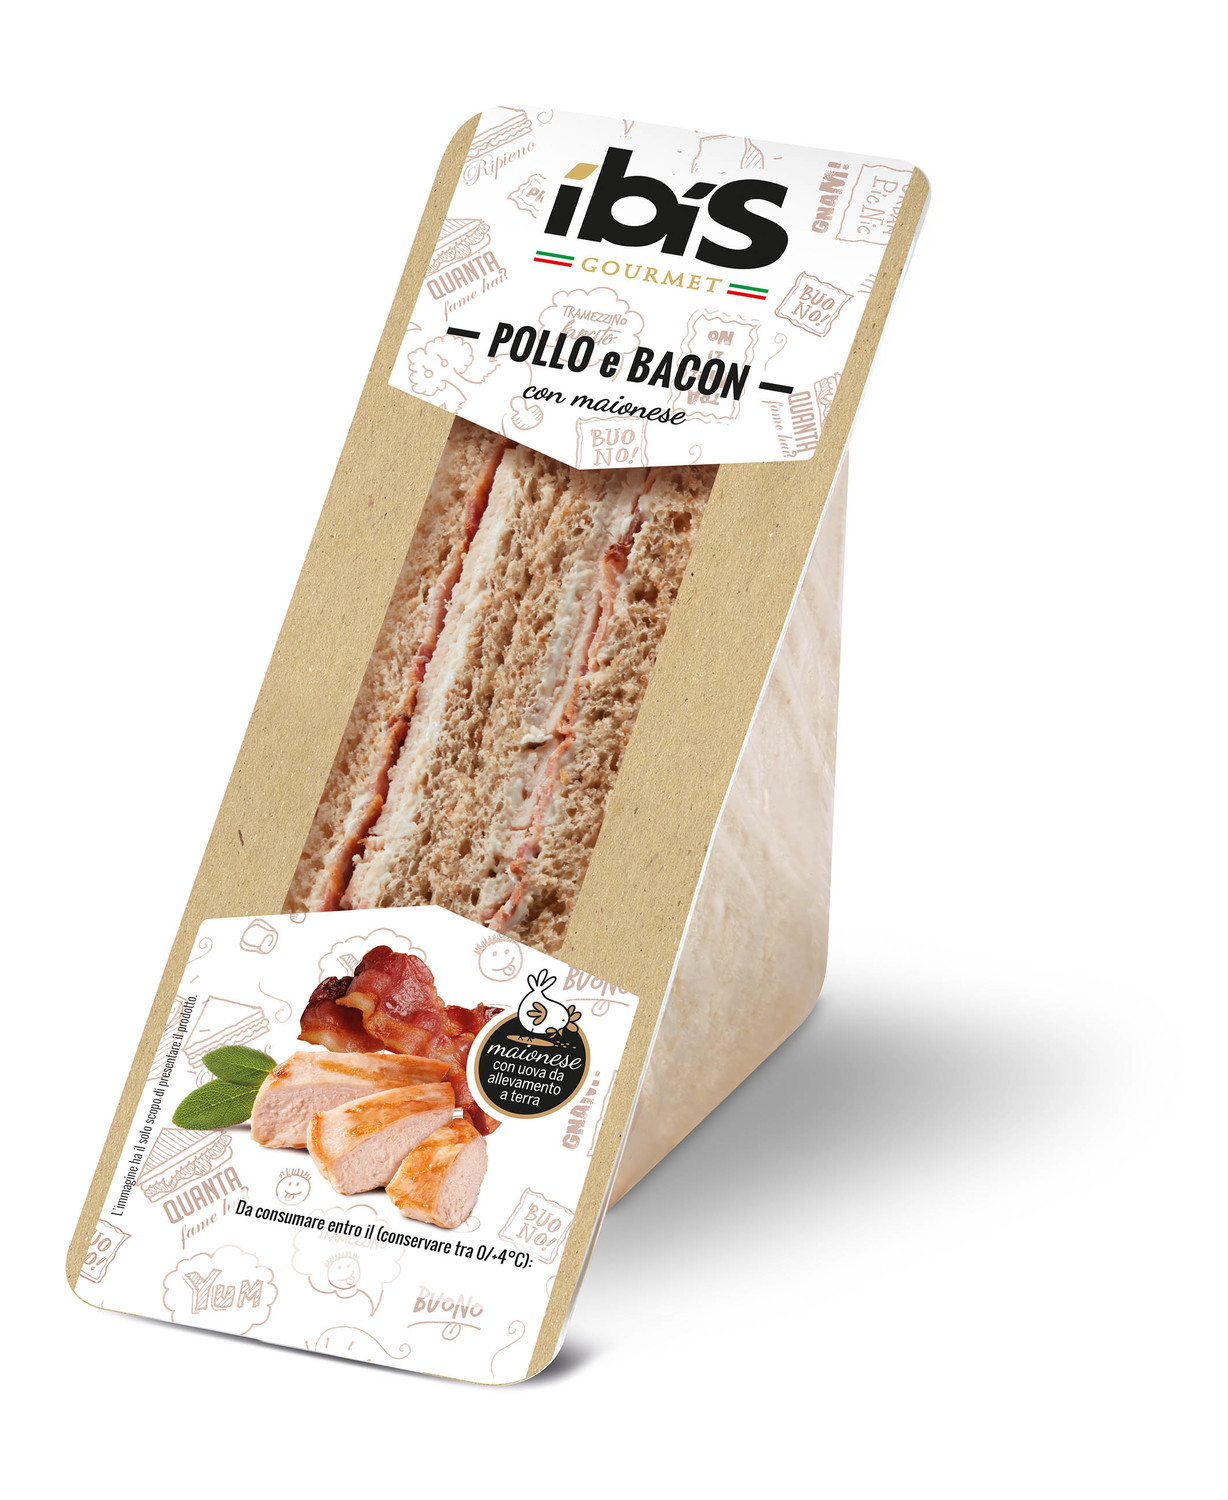 Ibis snack presenta le novità della linea gourmet